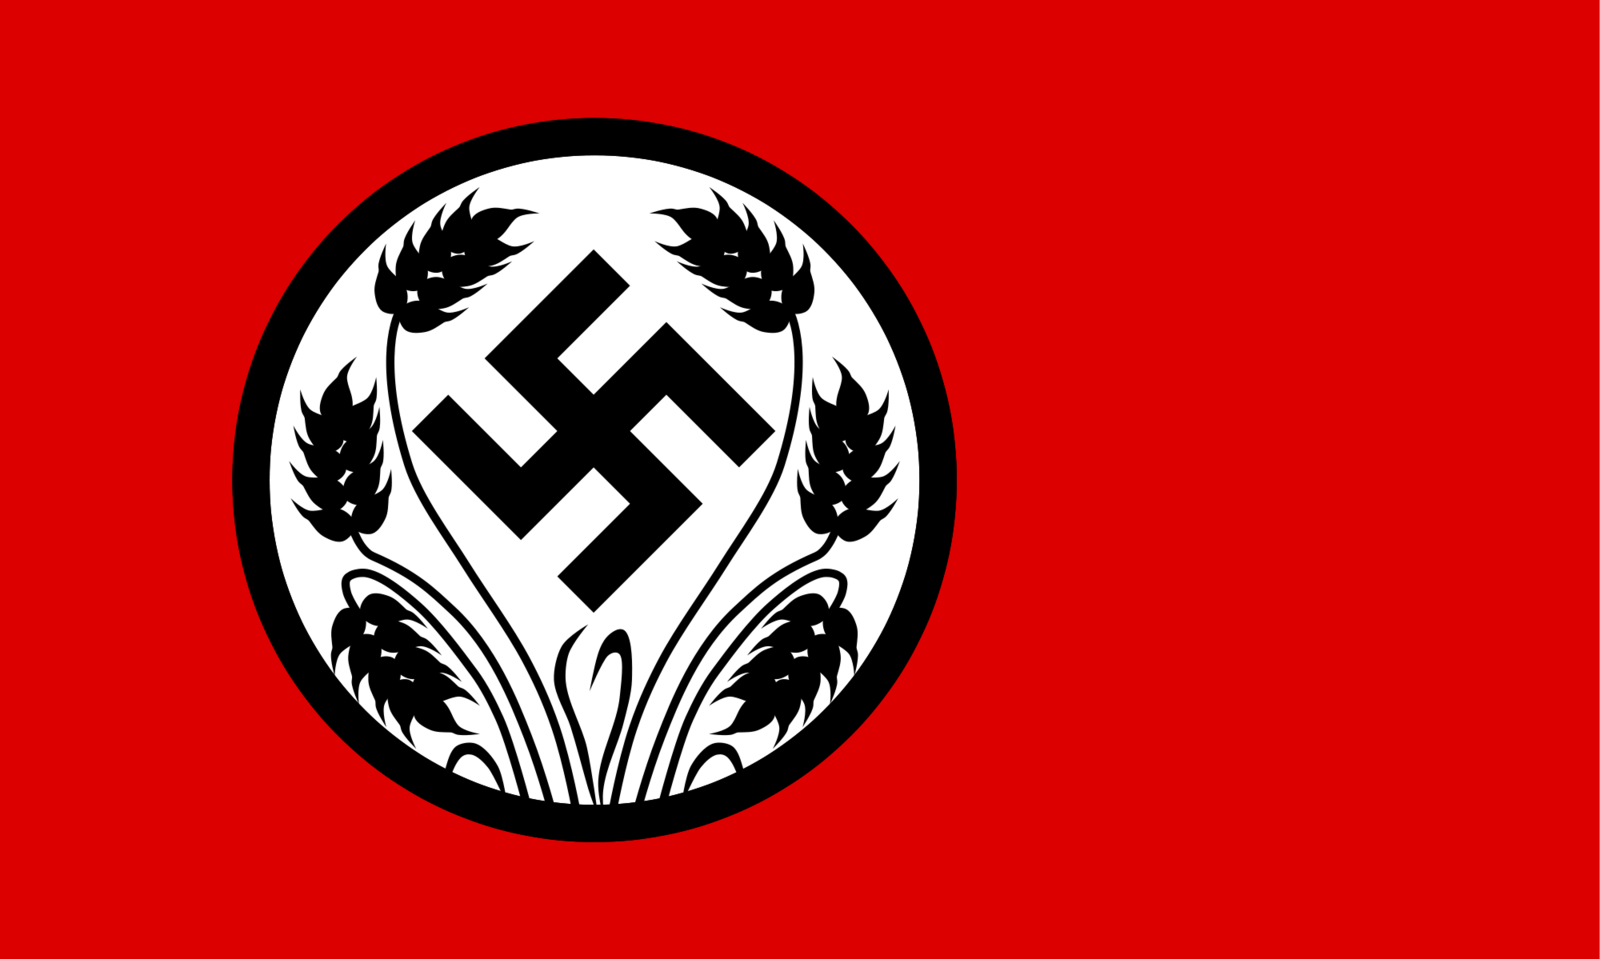 Nazi flag 3 by TheMistRunsRed on deviantART